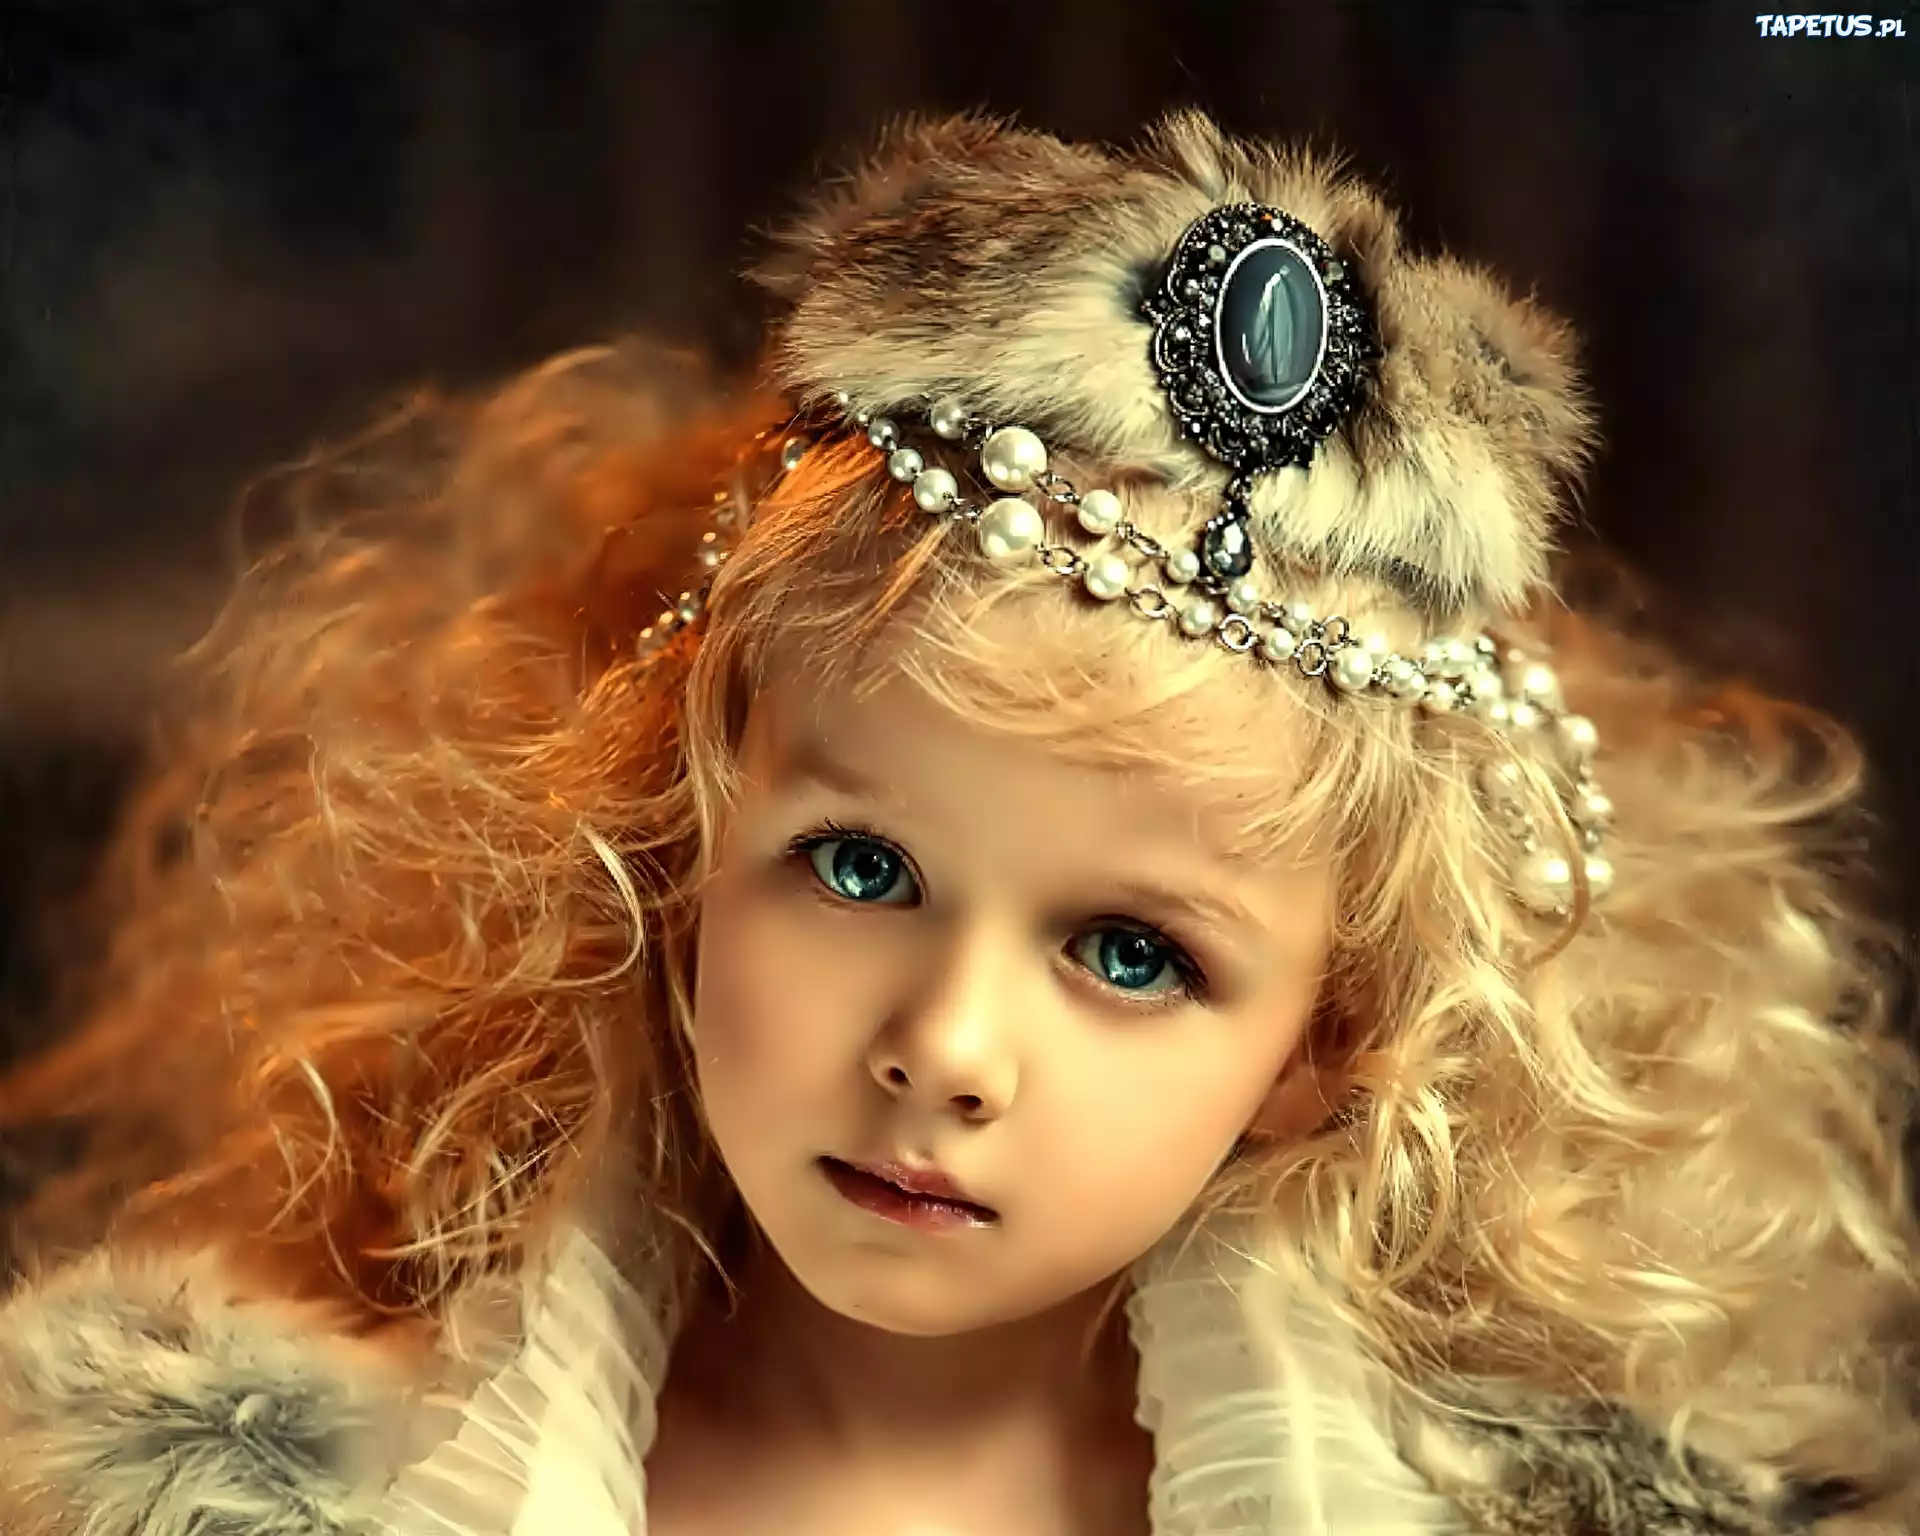 Малышка s класса слишком сильна. Девочка принцесса. Девушки принцессы. Принцесса фотосессия. Фотосессия маленькой принцессы.